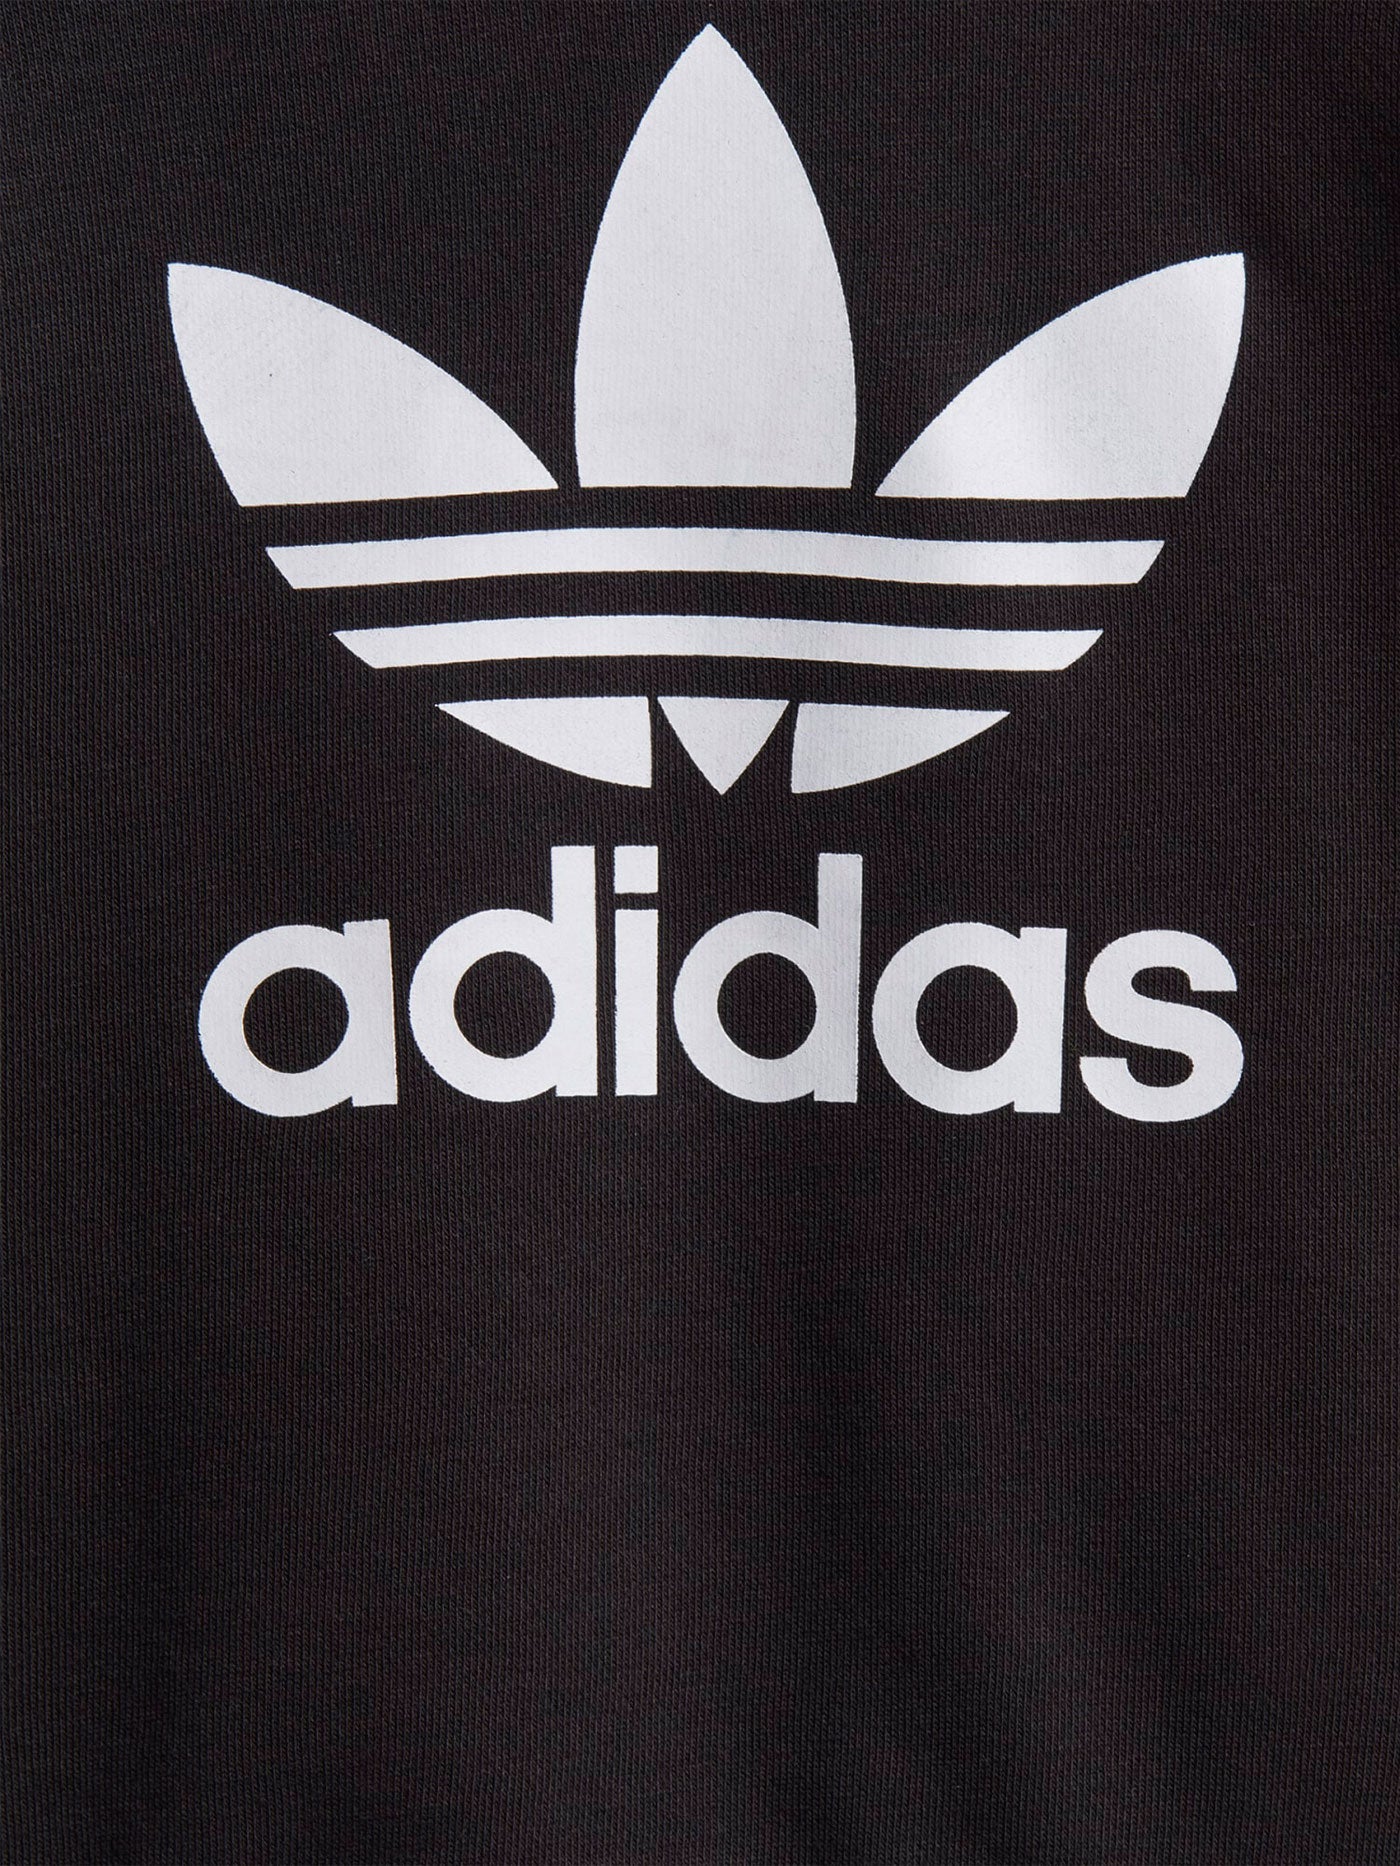 Adidas Adicolor Crewneck Sweatshirt